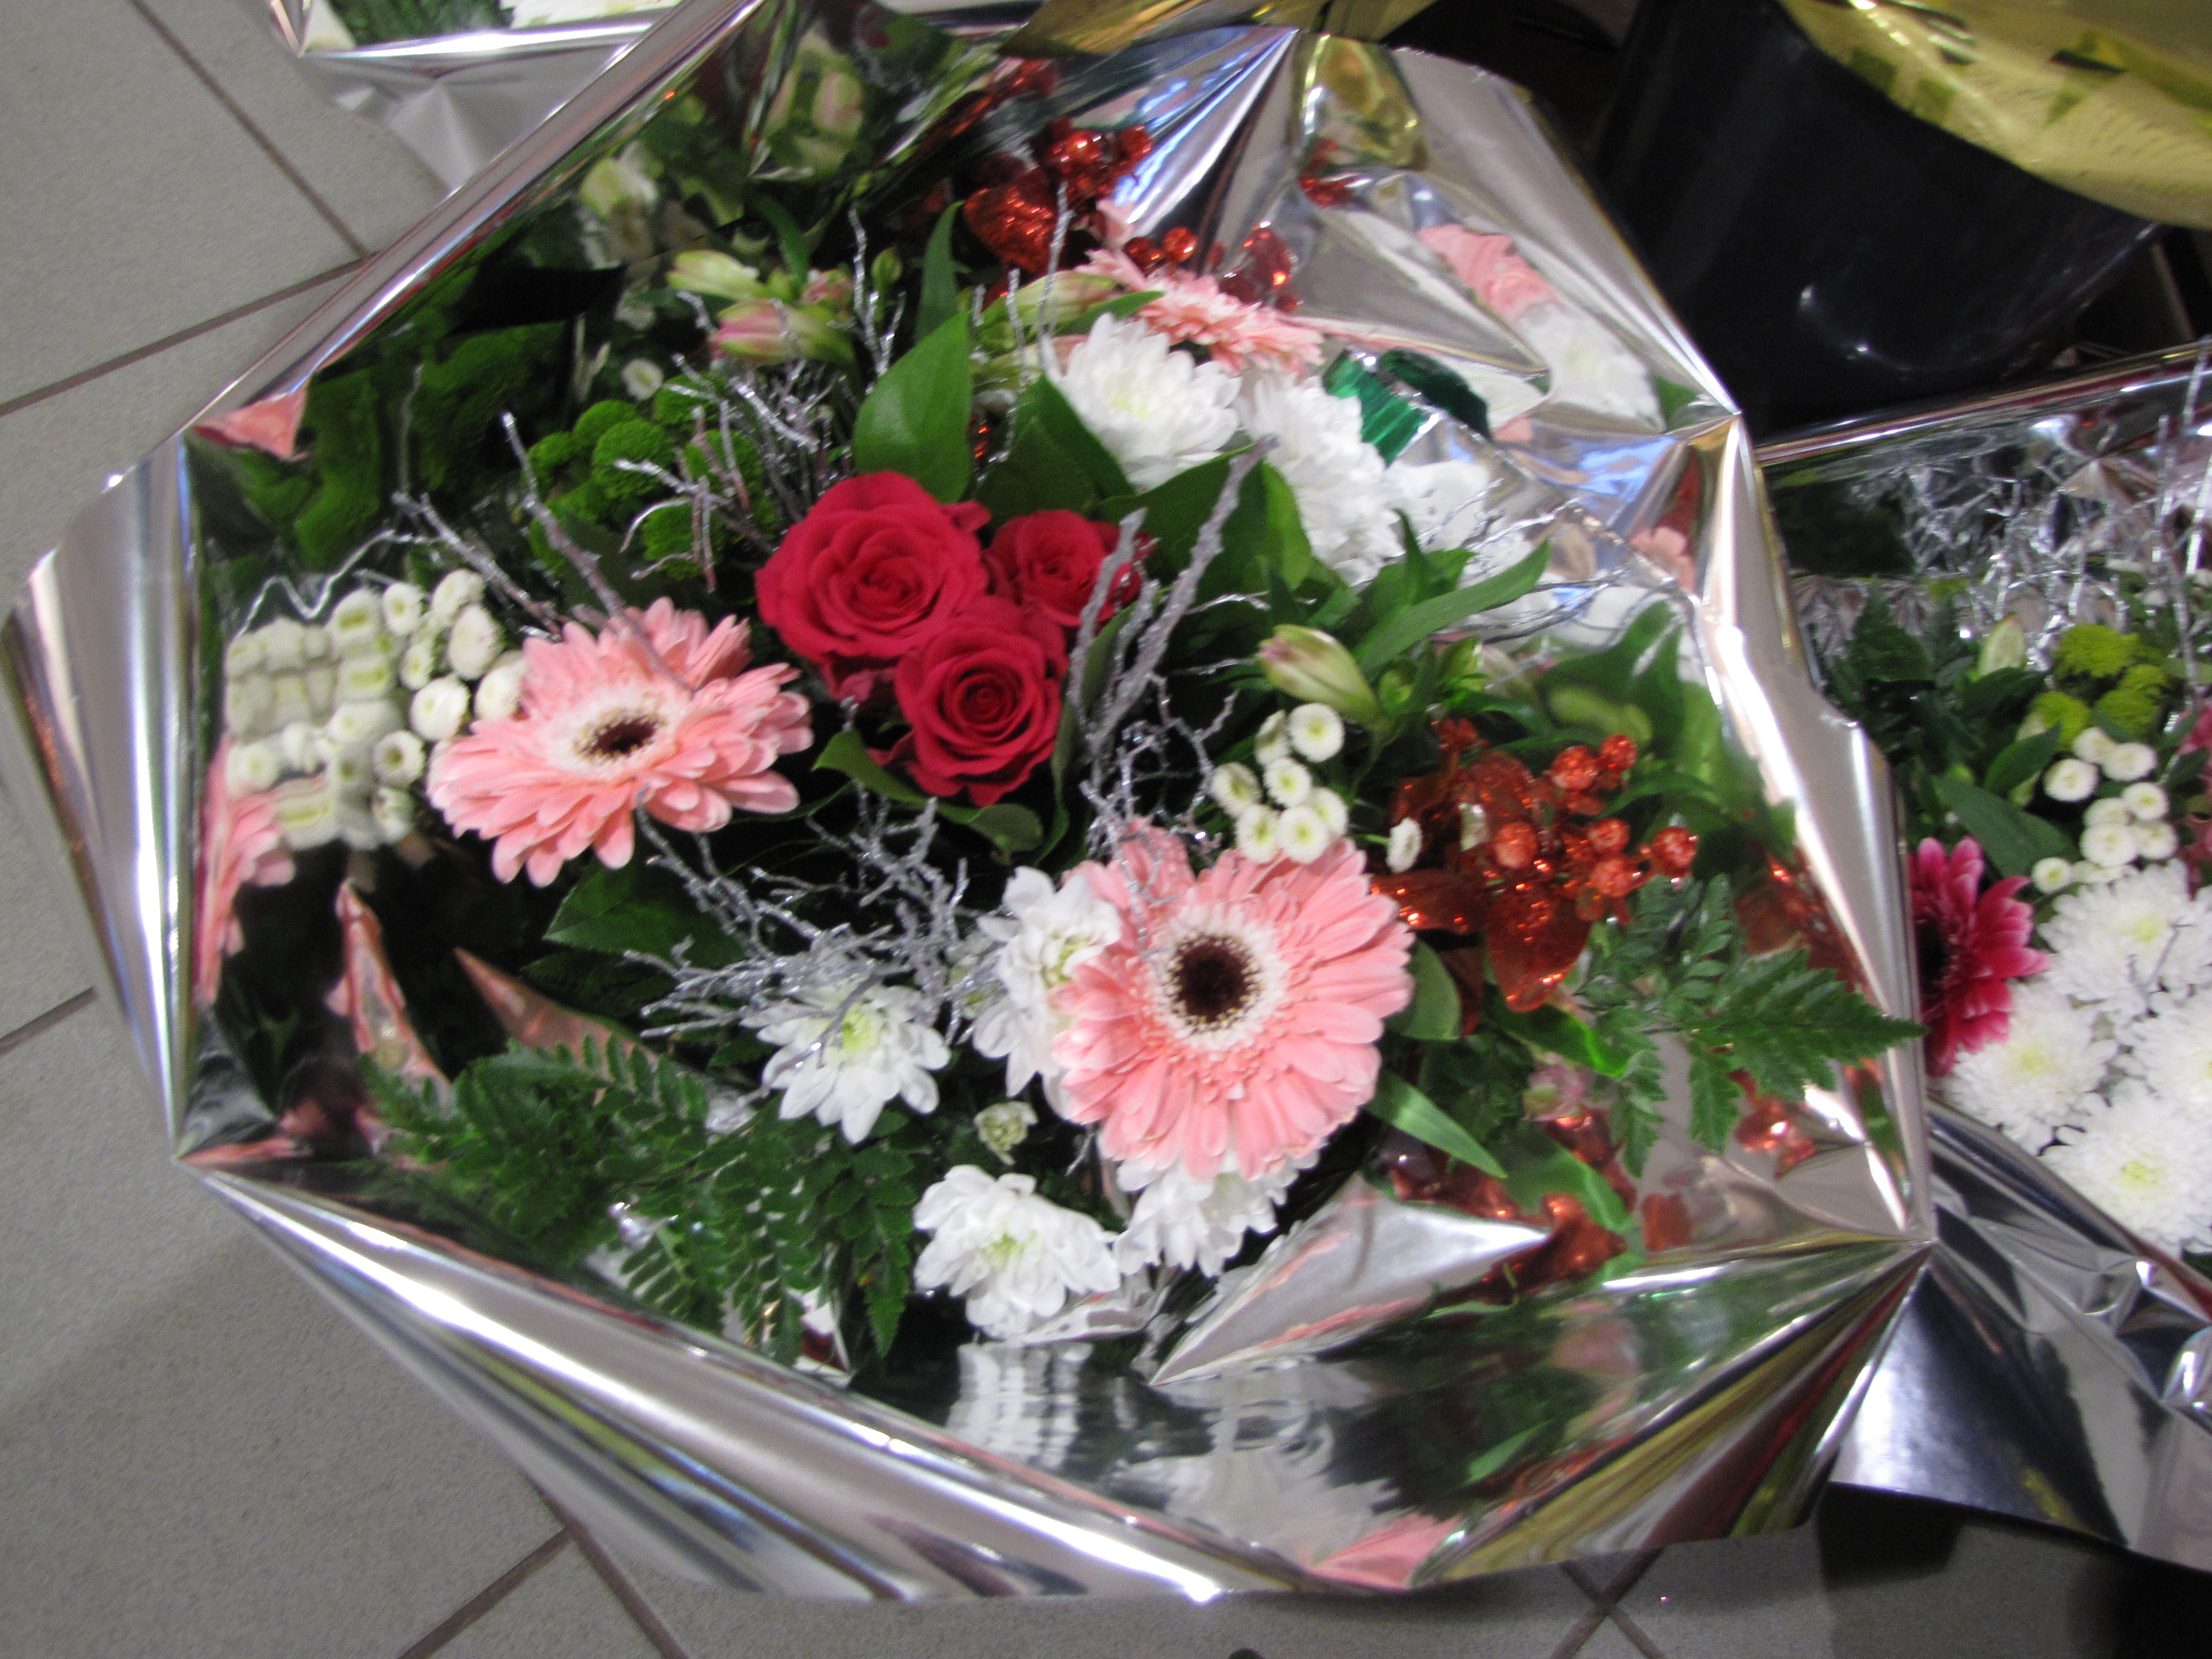 Fleuriste Douai, 1001 fleurs Douai. Éva vous ouvre ses portes